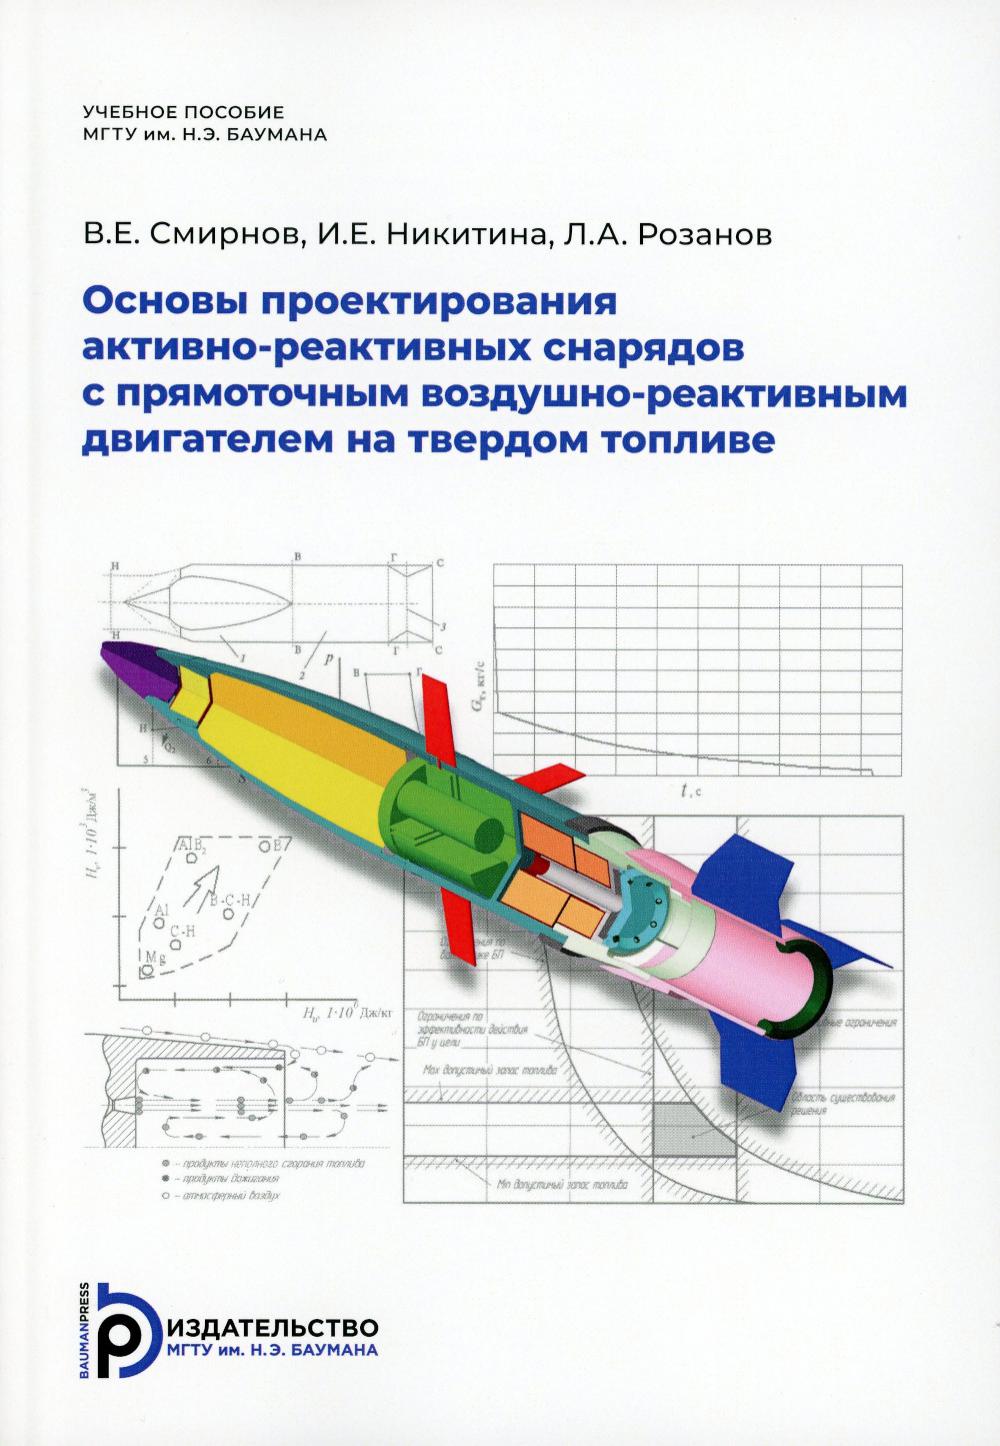 Основы проектирования активно-реактивных снарядов с прямоточным воздушно-реактивным двигателем на твердом топливе: Учебное пособие